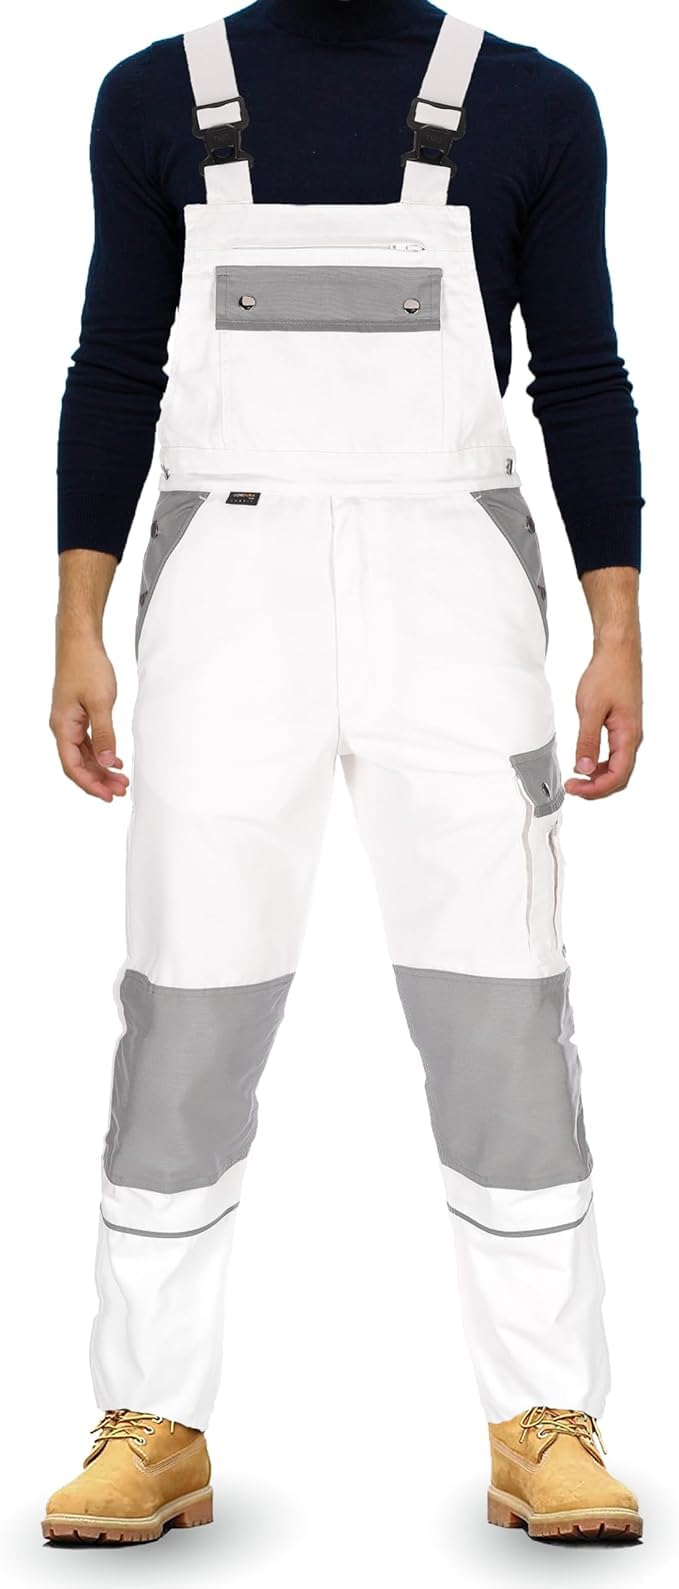 TMG® | Lange Arbeitslatzhose Herren, Weiße Malerlatzhose mit Kniepolstertaschen, Malerhose mit viel Stauraum | 44